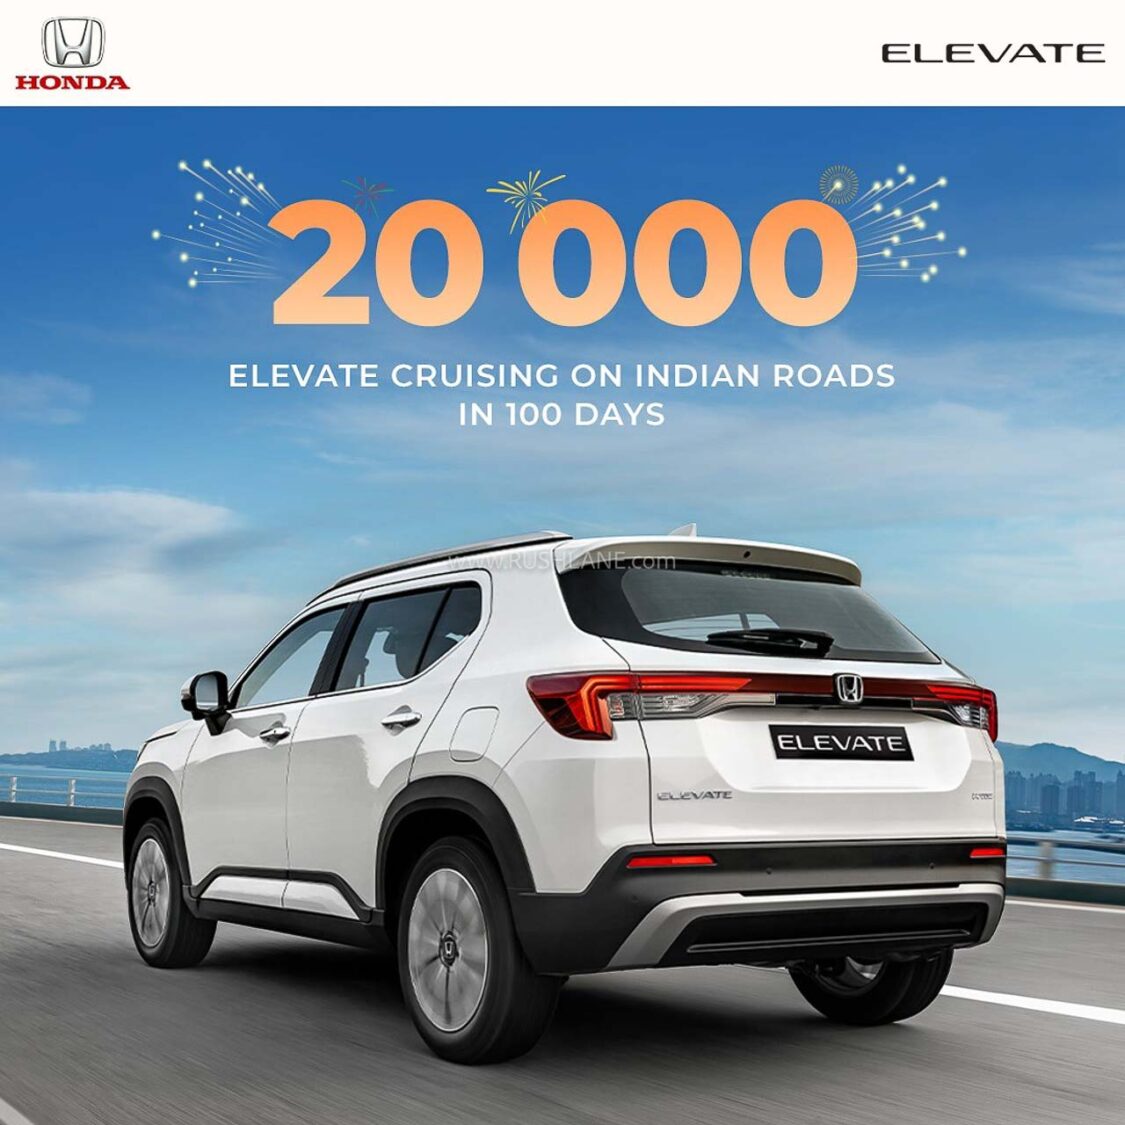 Honda Elevate sales cross 20,000